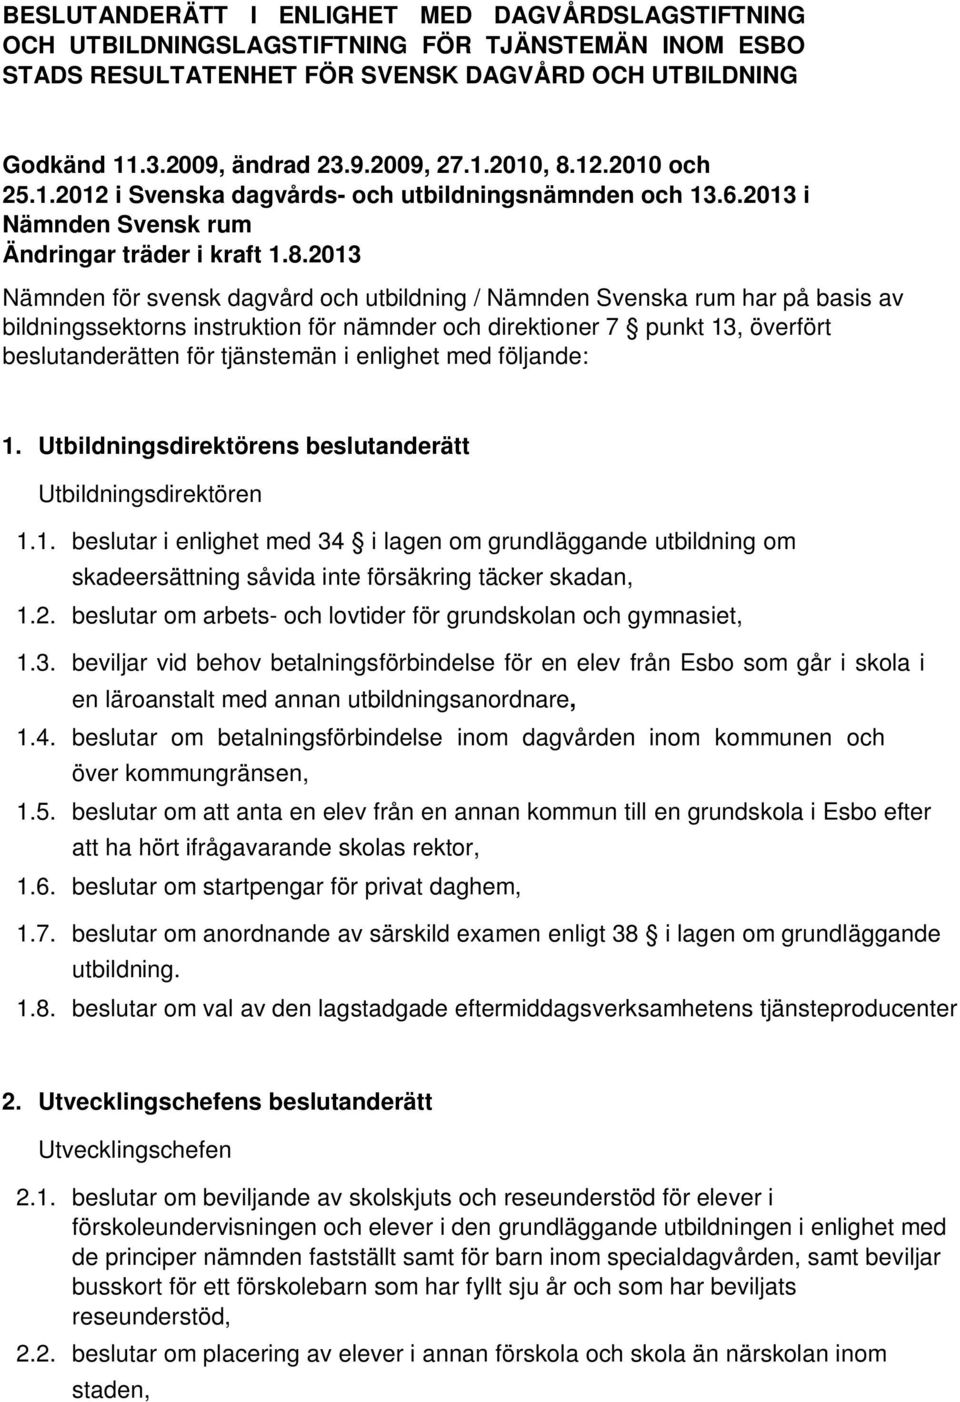 2013 Nämnden för svensk dagvård och utbildning / Nämnden Svenska rum har på basis av bildningssektorns instruktion för nämnder och direktioner 7 punkt 13, överfört beslutanderätten för tjänstemän i